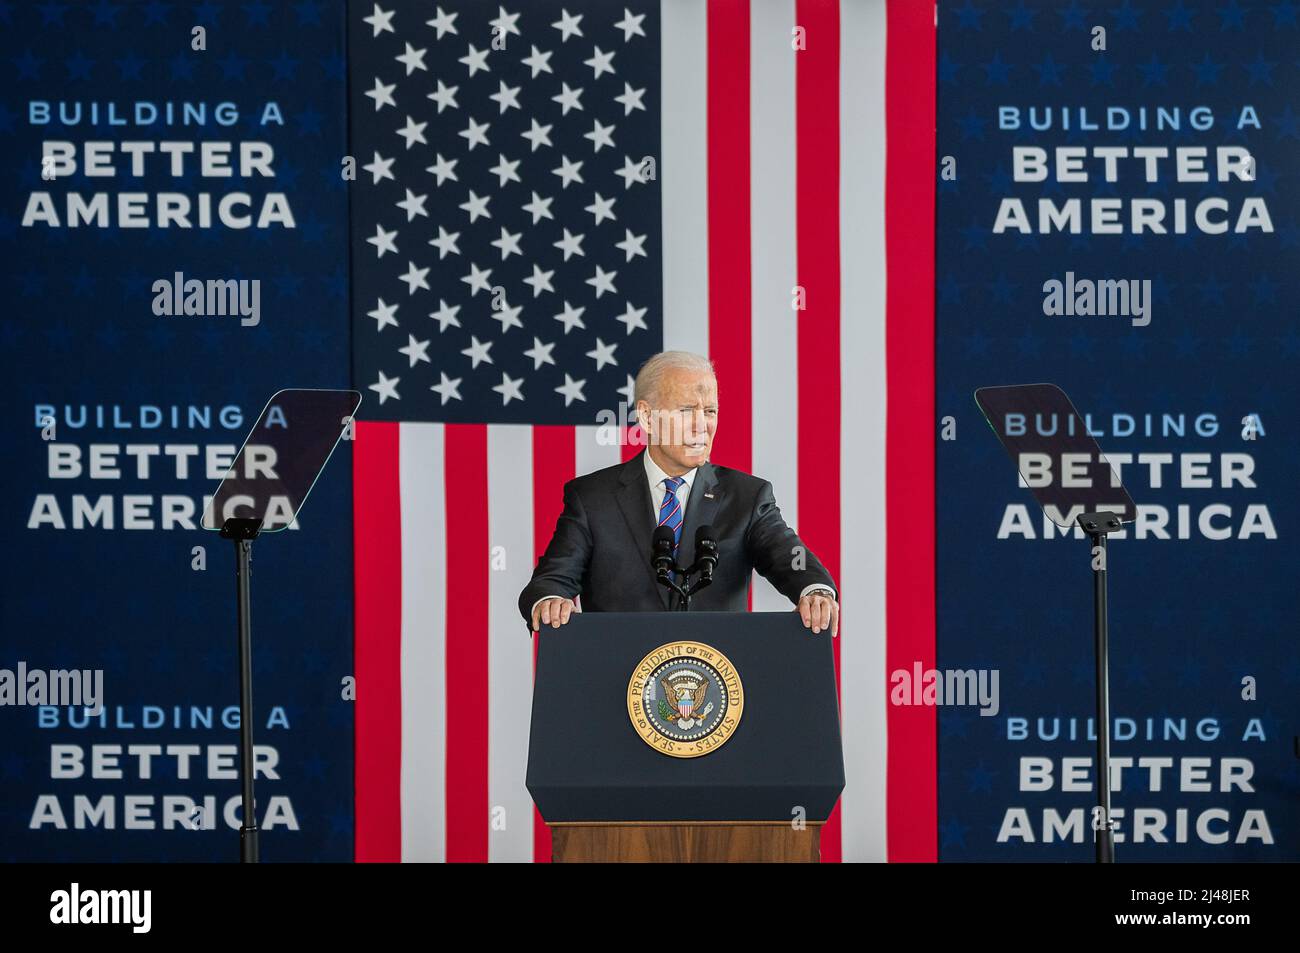 SUPERIOR, WISCONSIN, États-Unis - 02 mars 2022 - le président des États-Unis Joe Biden prononce un discours sur la construction d'une Amérique meilleure et la loi bipartisane sur les infrastructures, Banque D'Images